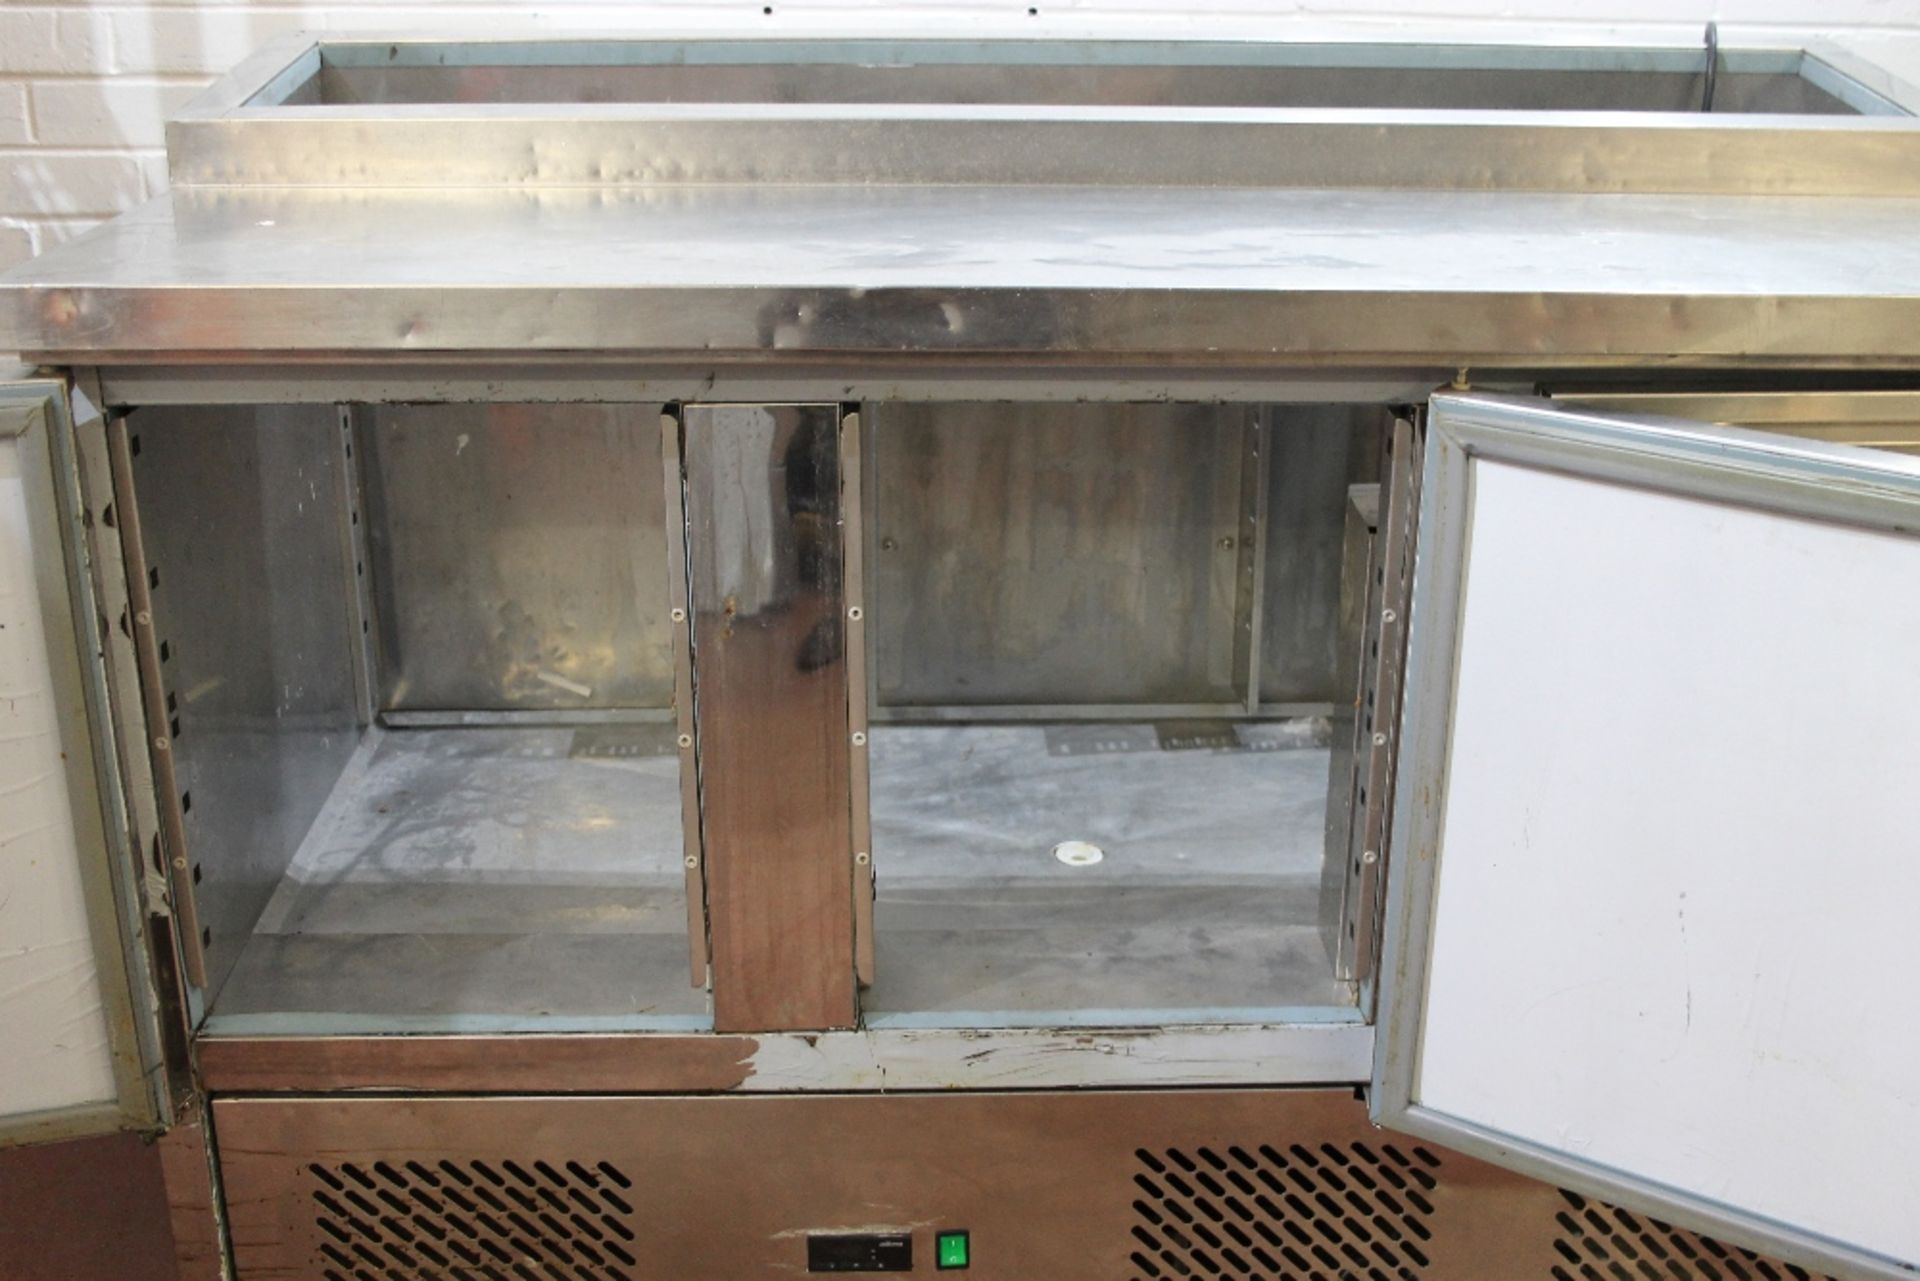 Polar 3 Door Pizza / Salad Prep Unit – No Pots – No Shelves Model PS5300 – 1ph- W137cm x H95cm x - Image 2 of 3